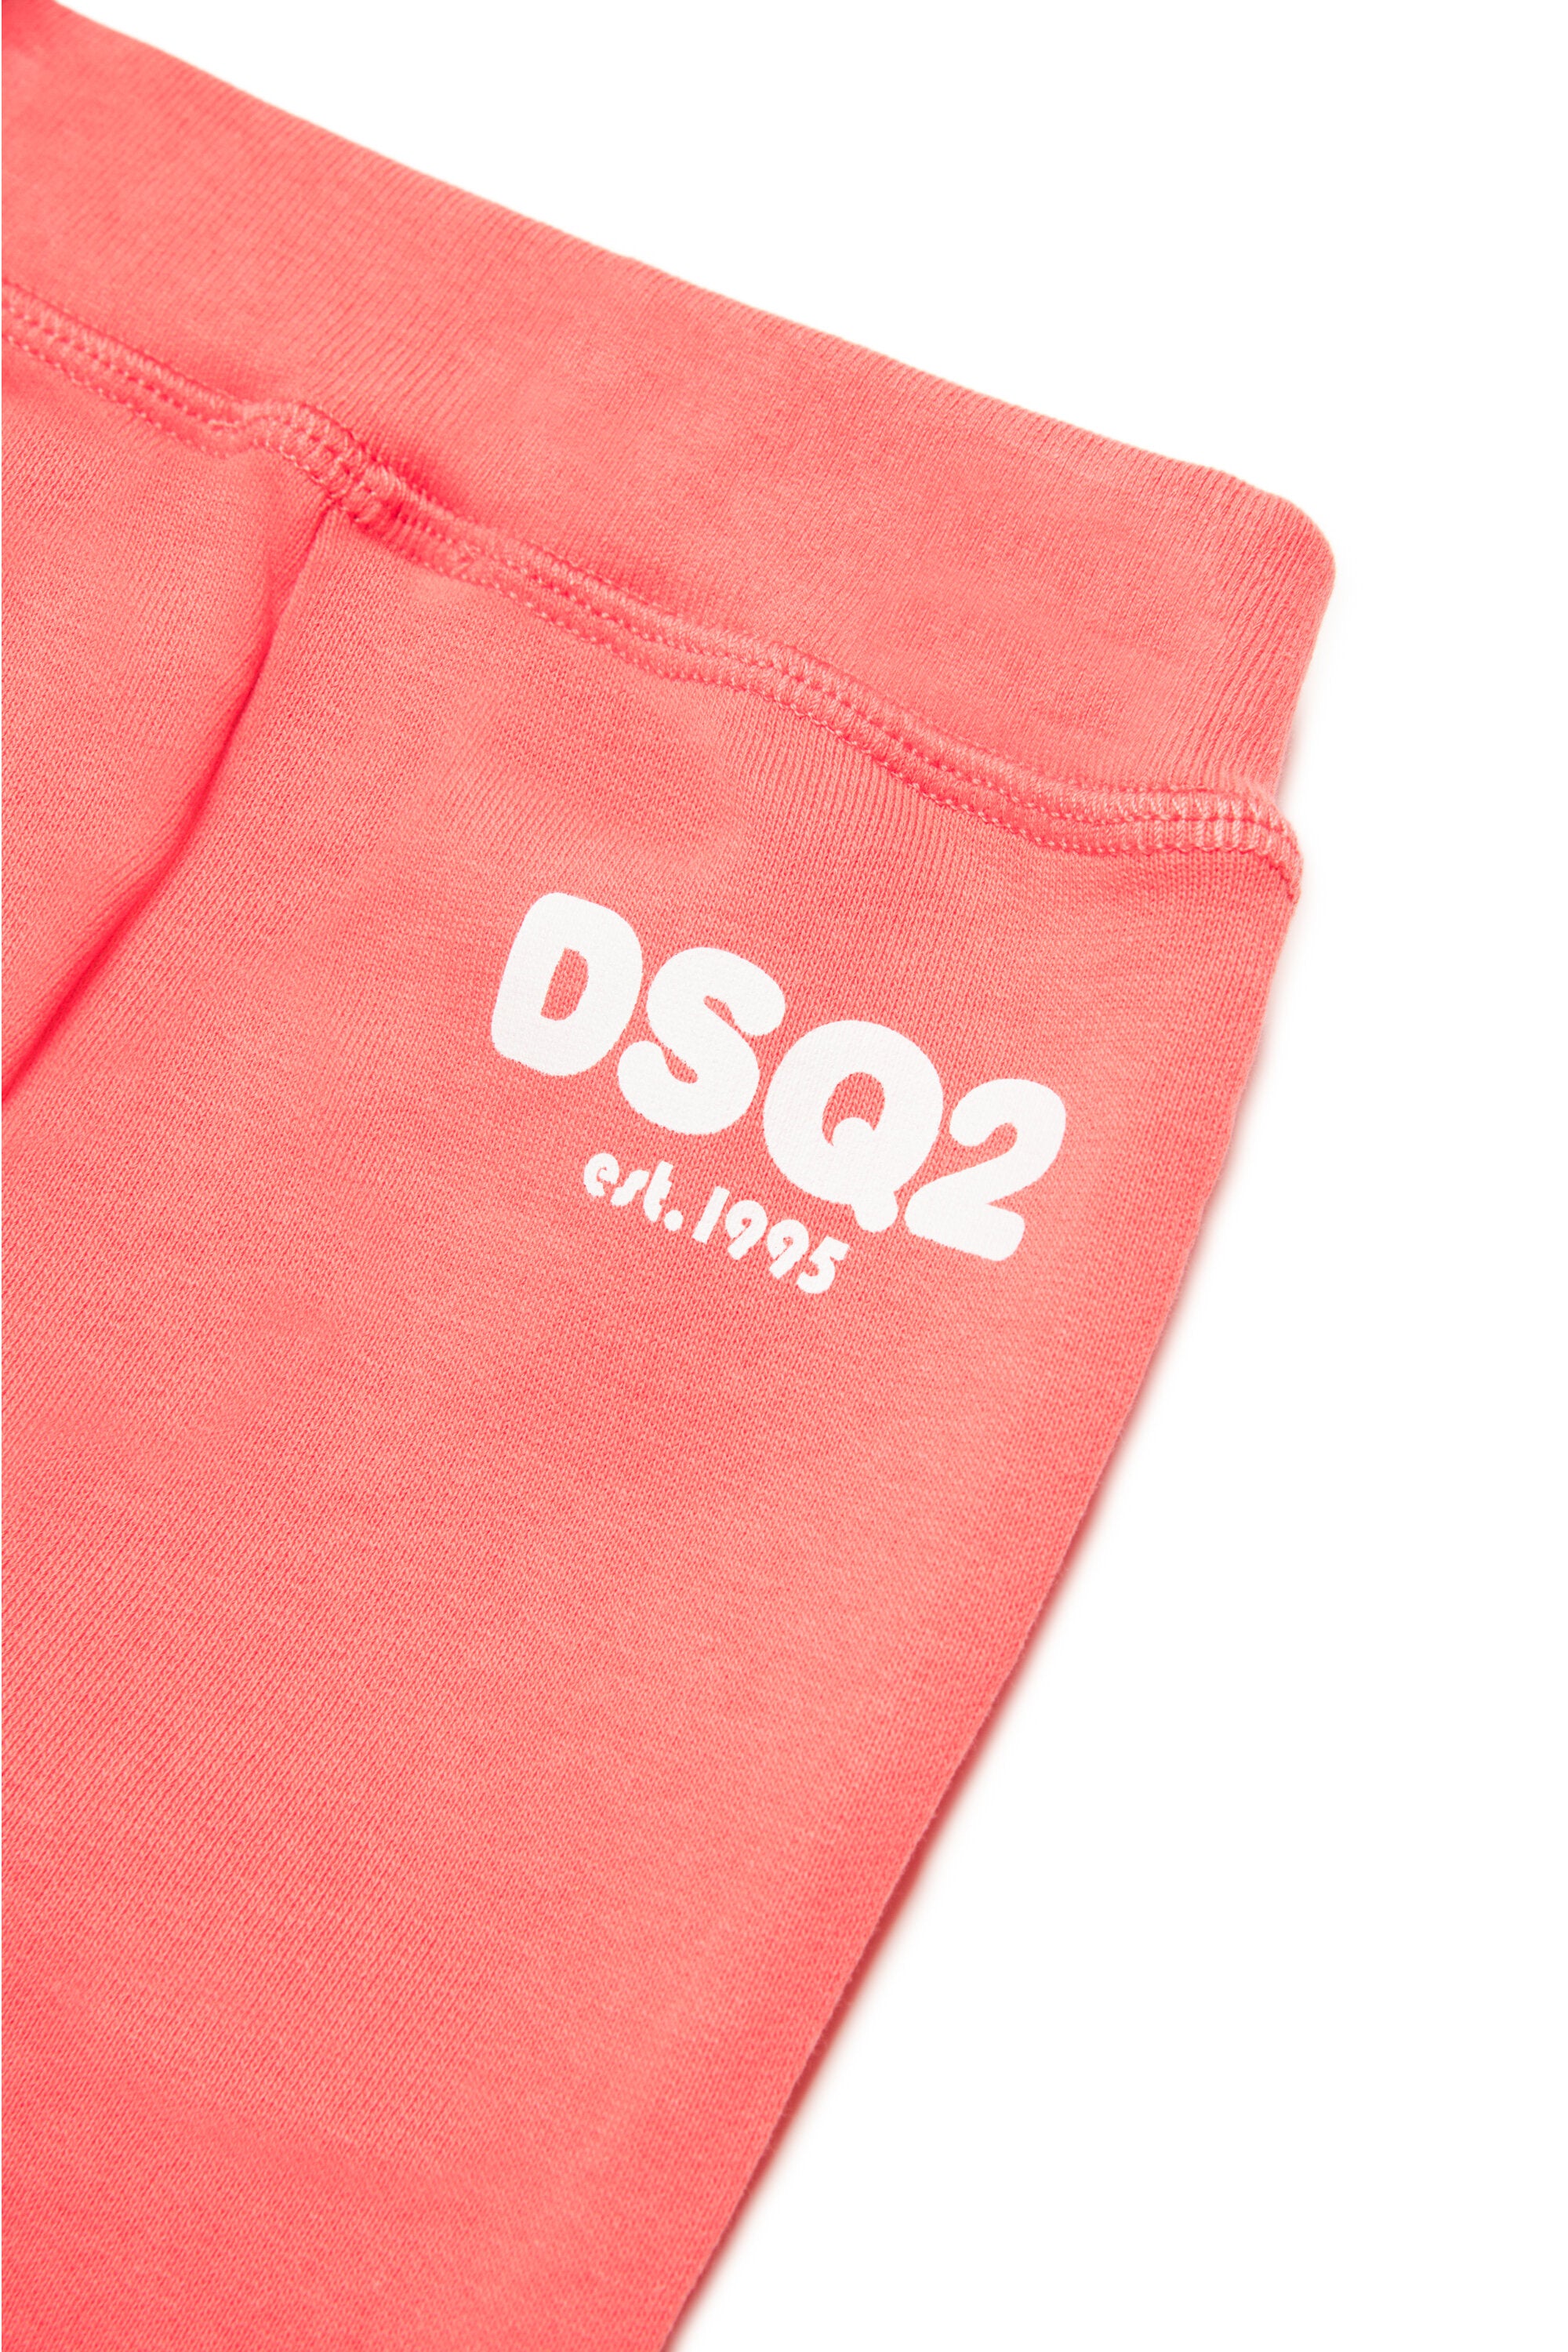 Pantalones deportivos en chándal con logotipo DSQ2 est.1995